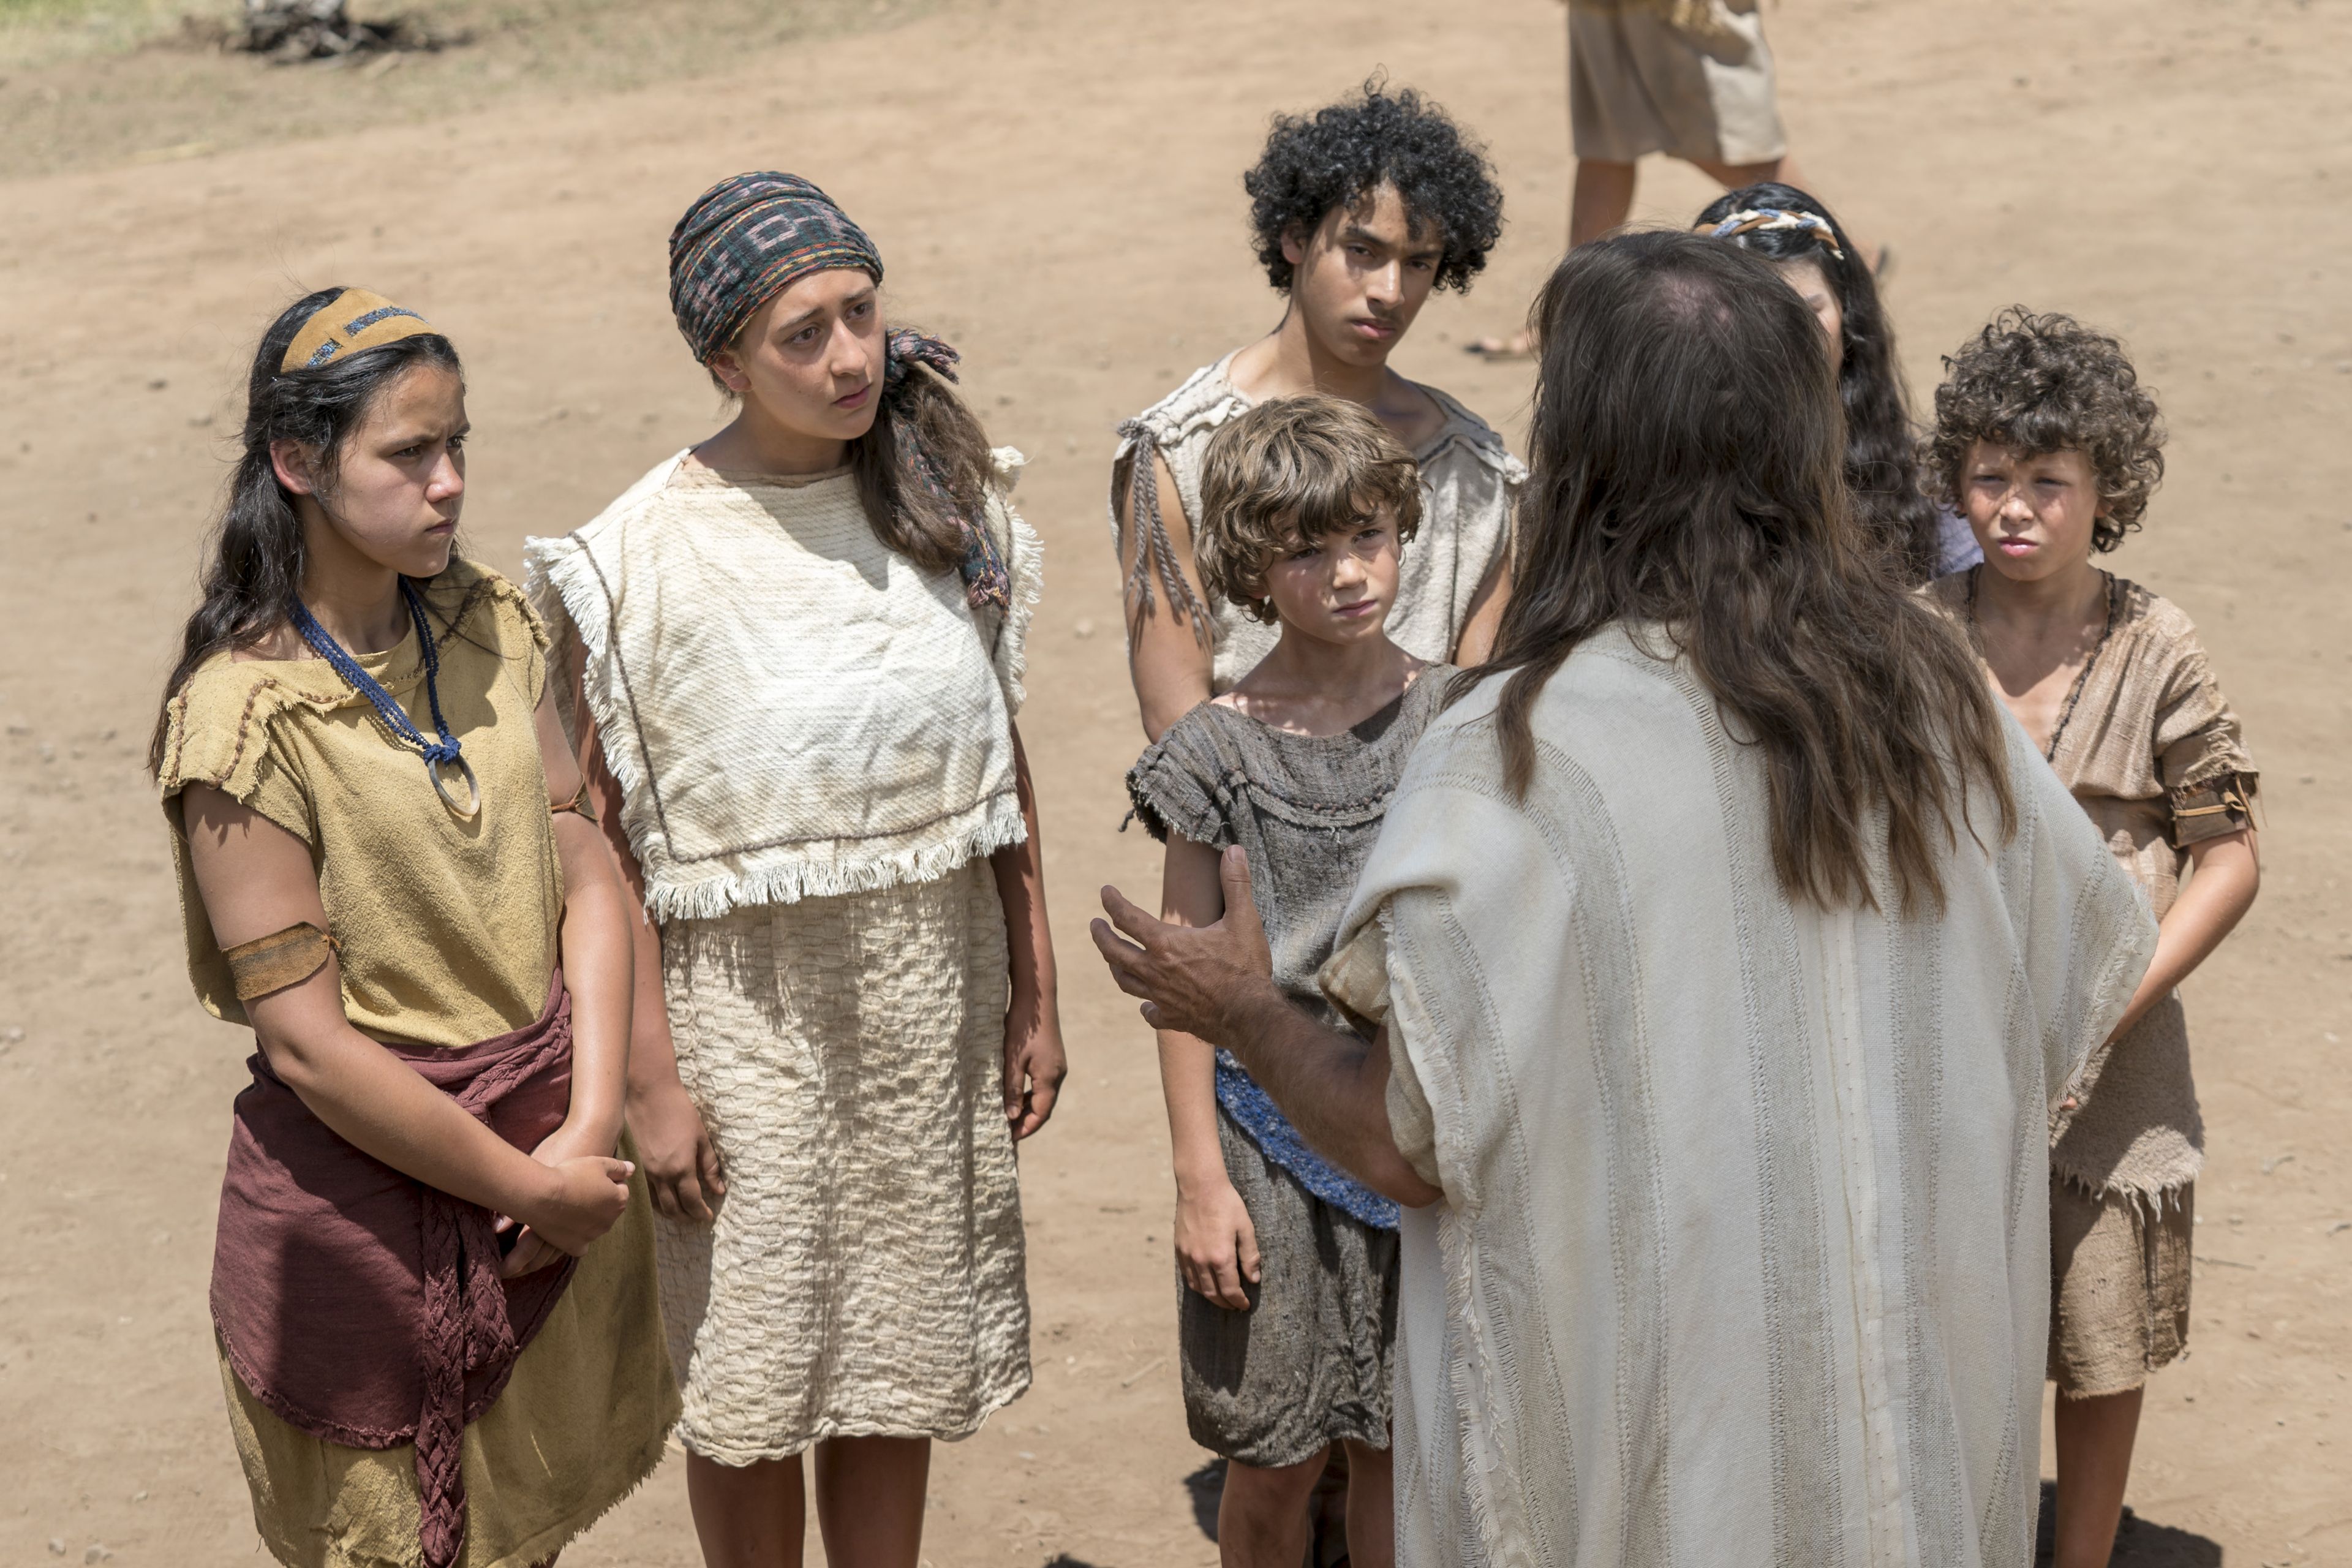 Nephites listen as Jacob teaches.